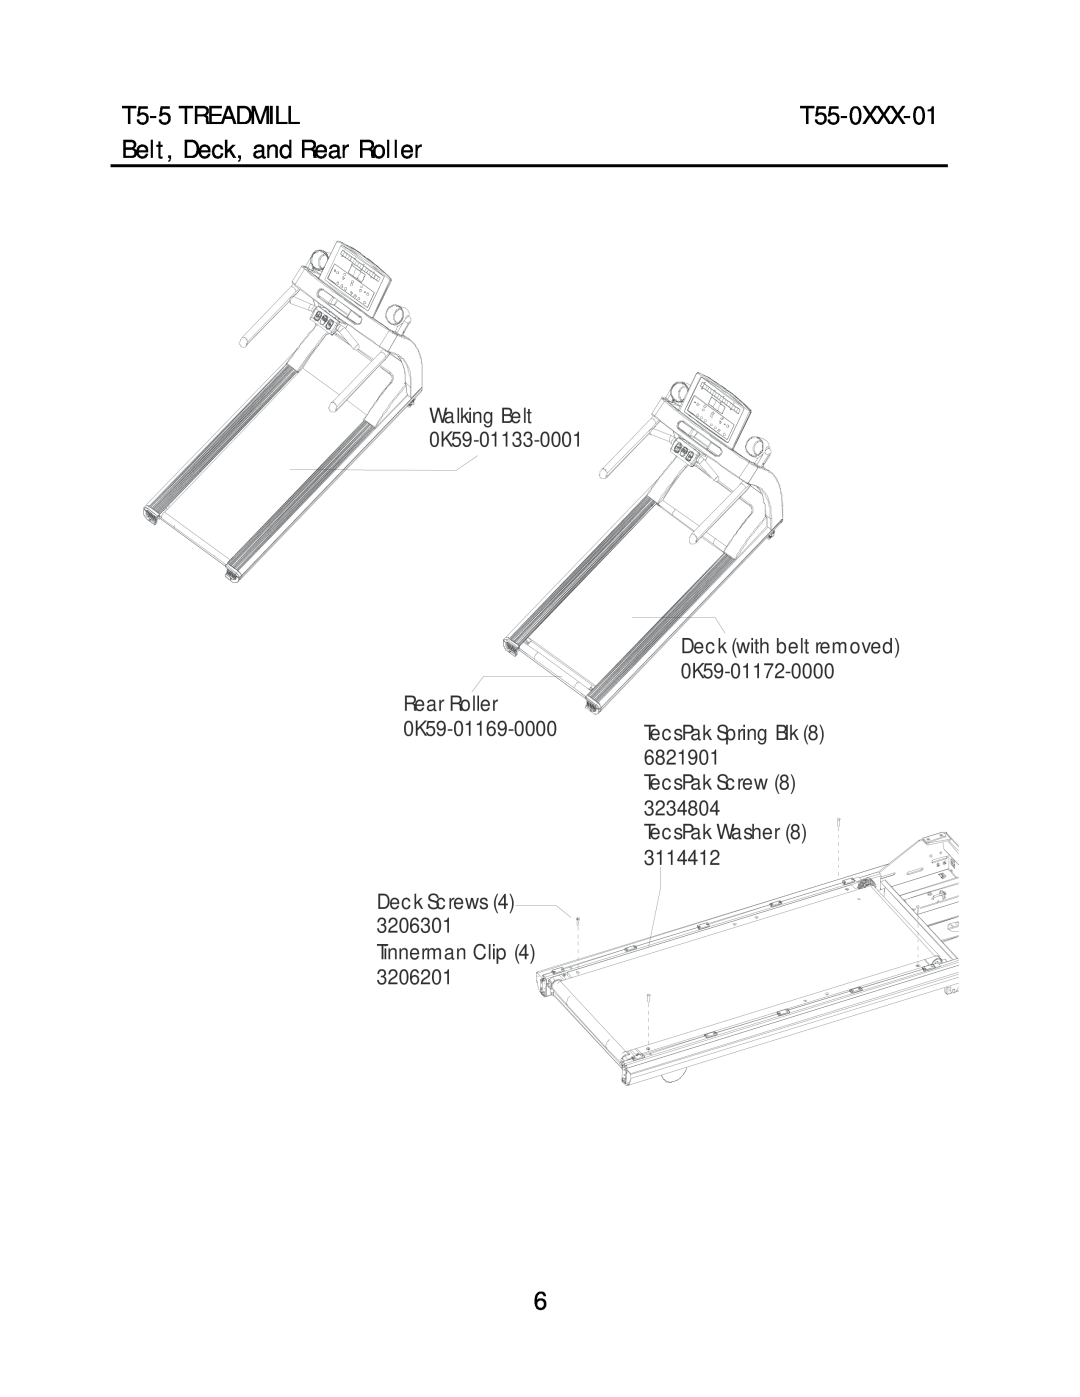 Life Fitness T55-0XXX-01 manual Belt, Deck, and Rear Roller, T5-5 TREADMILL, Walking Belt 0K59-01133-0001, Tinnerman Clip 4 